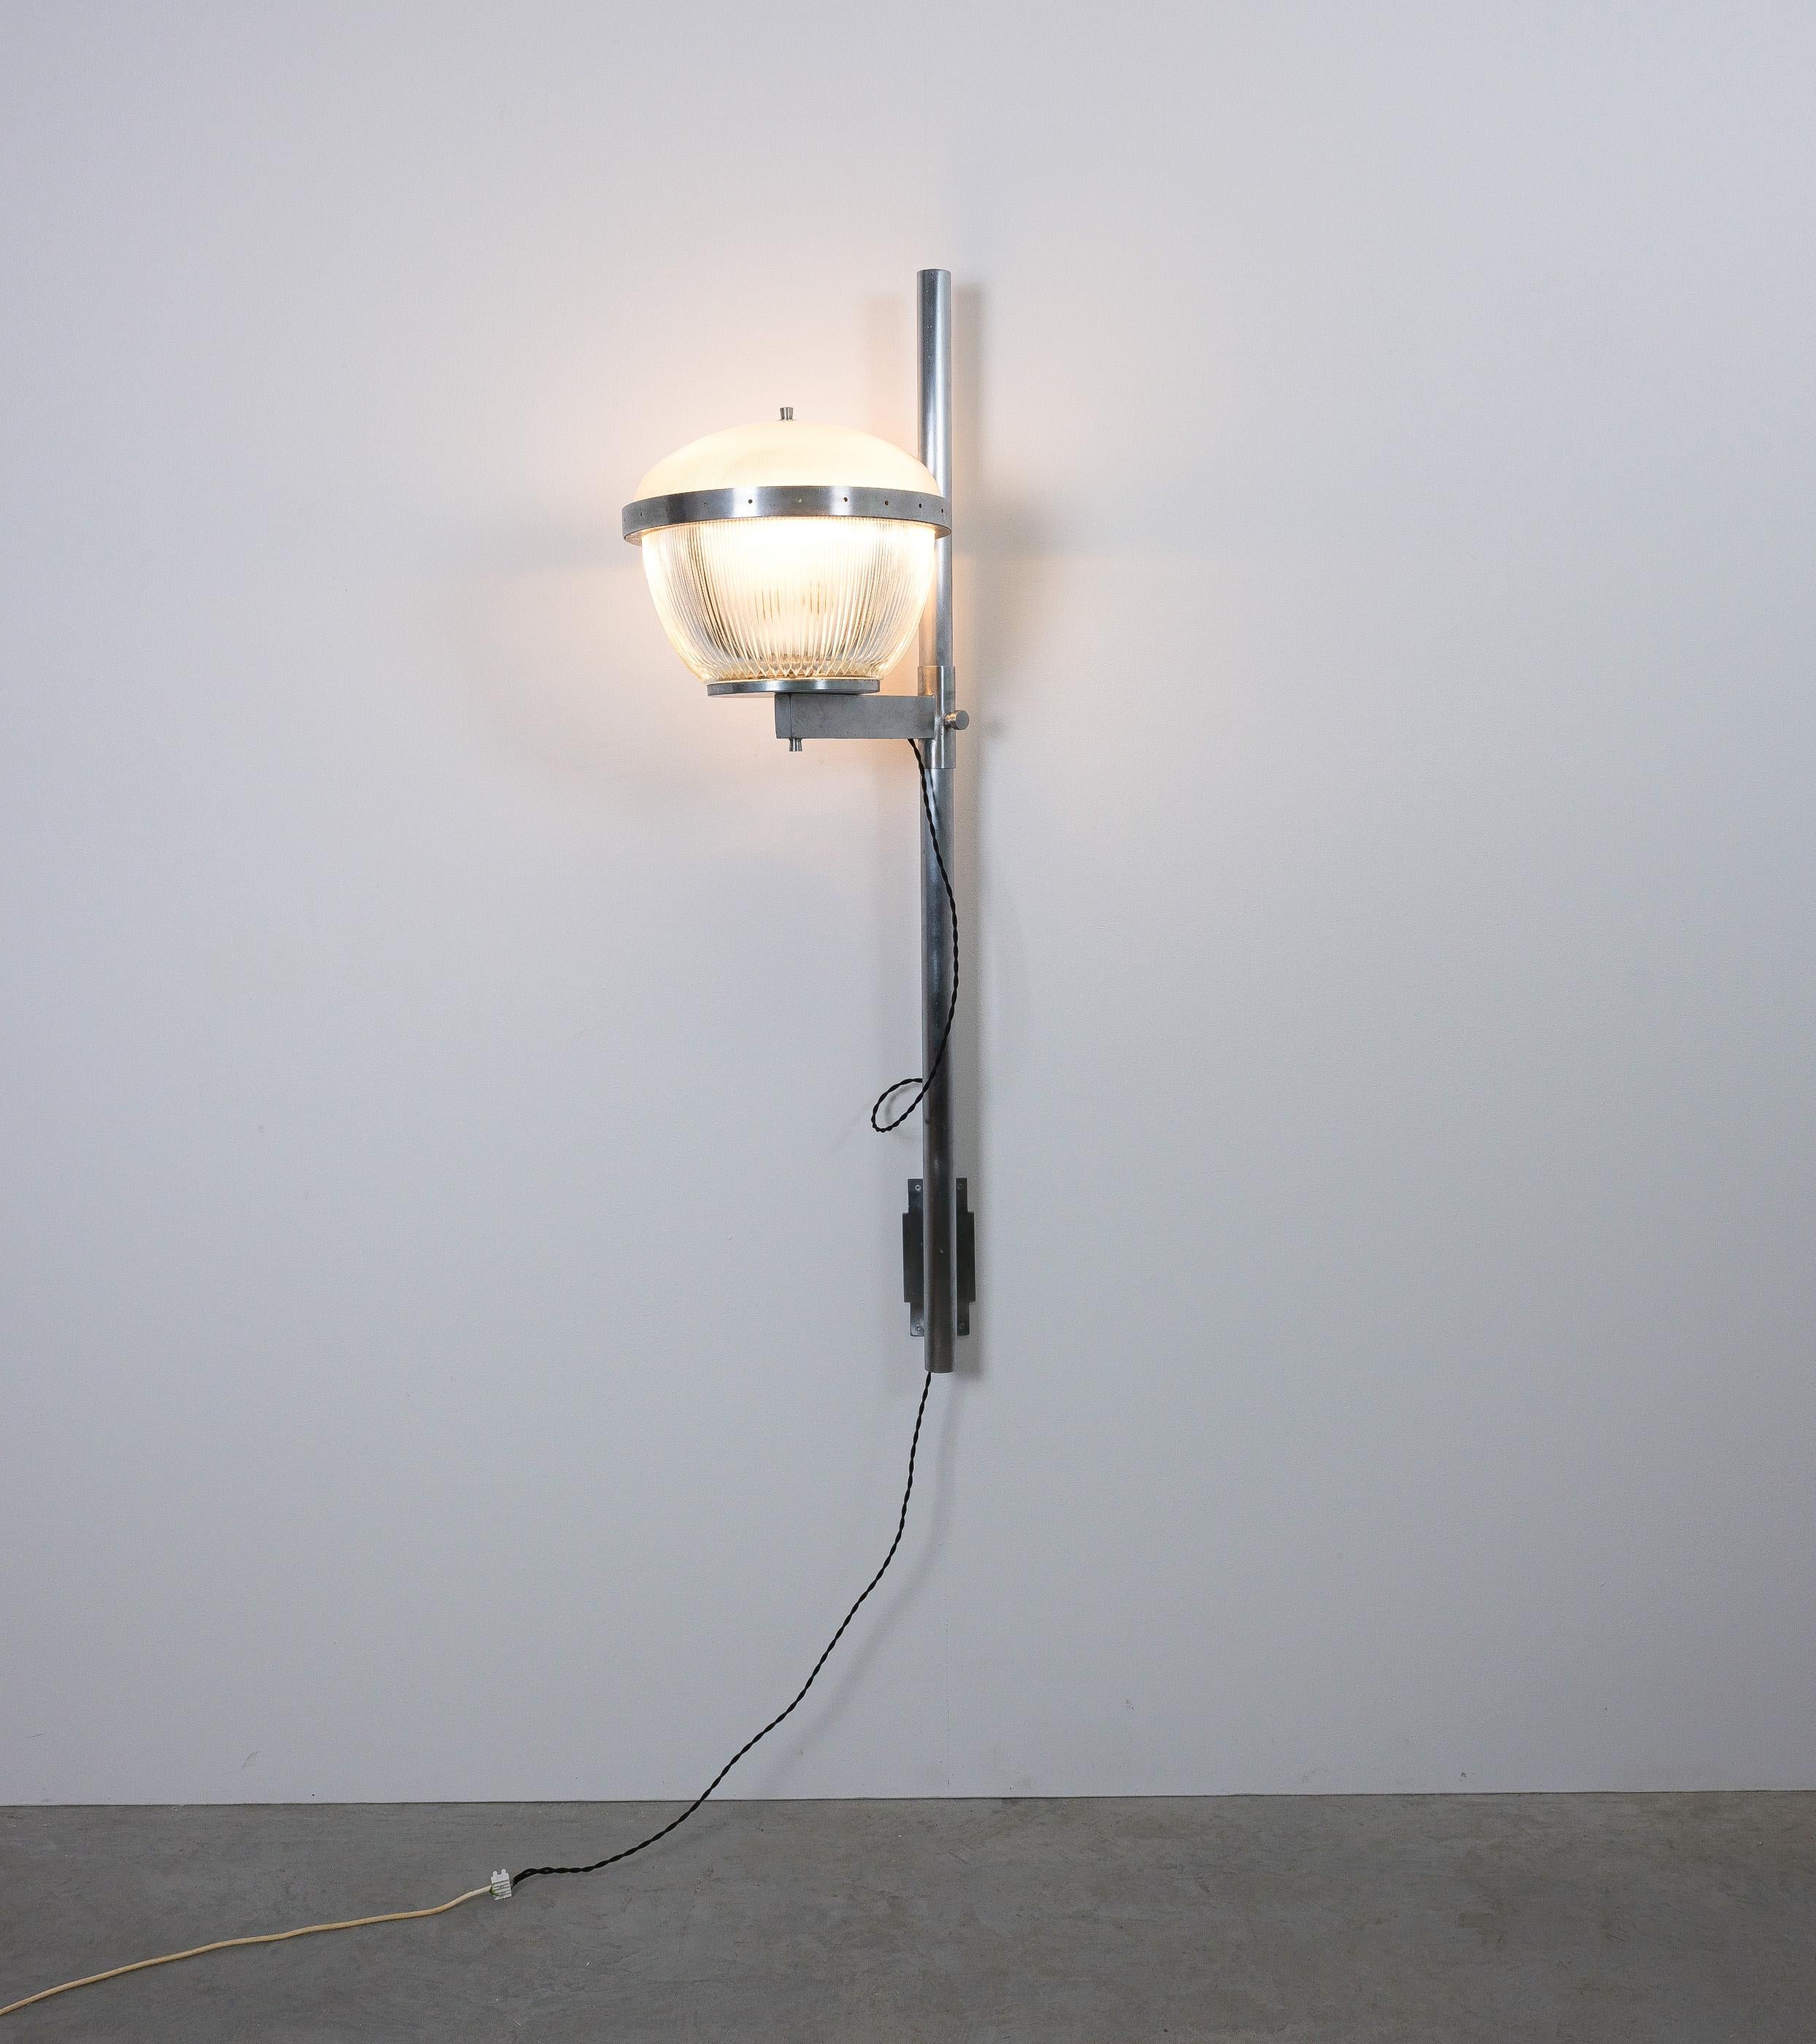 Satz von acht (8) monumentalen Sergio Mazza Wandlampen attr. Artemide, um 1960

Preis und Verkauf pro Stück. Abmessungen: 51,2